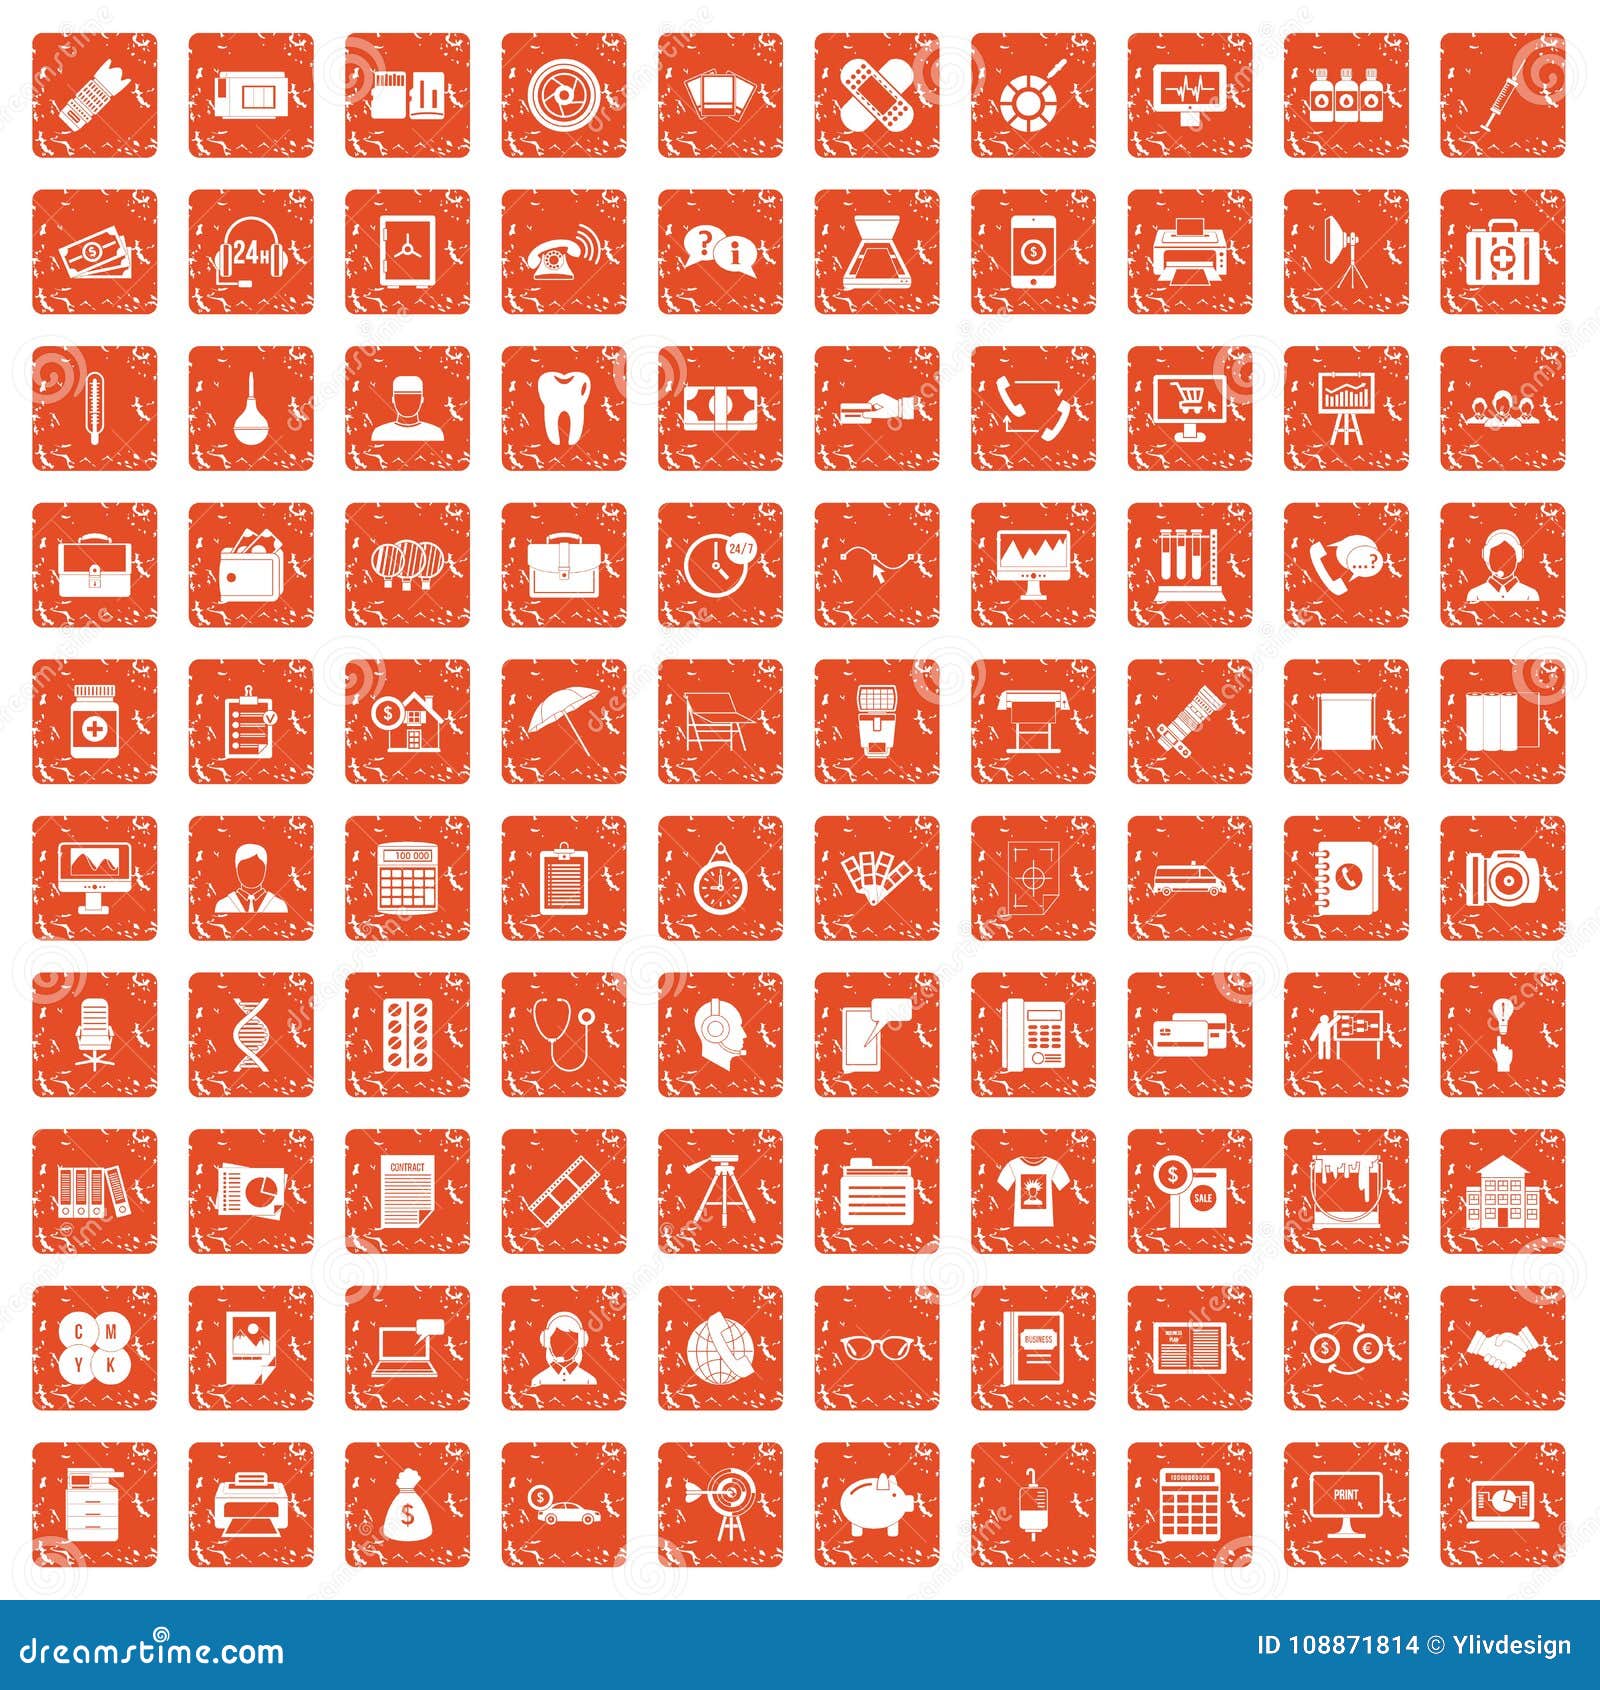 Apelsin för grunge för 100 avdelningssymboler fastställd. 100 avdelningssymboler ställde in i orange färg för grungestil isolerat på den vita bakgrundsvektorillustrationen